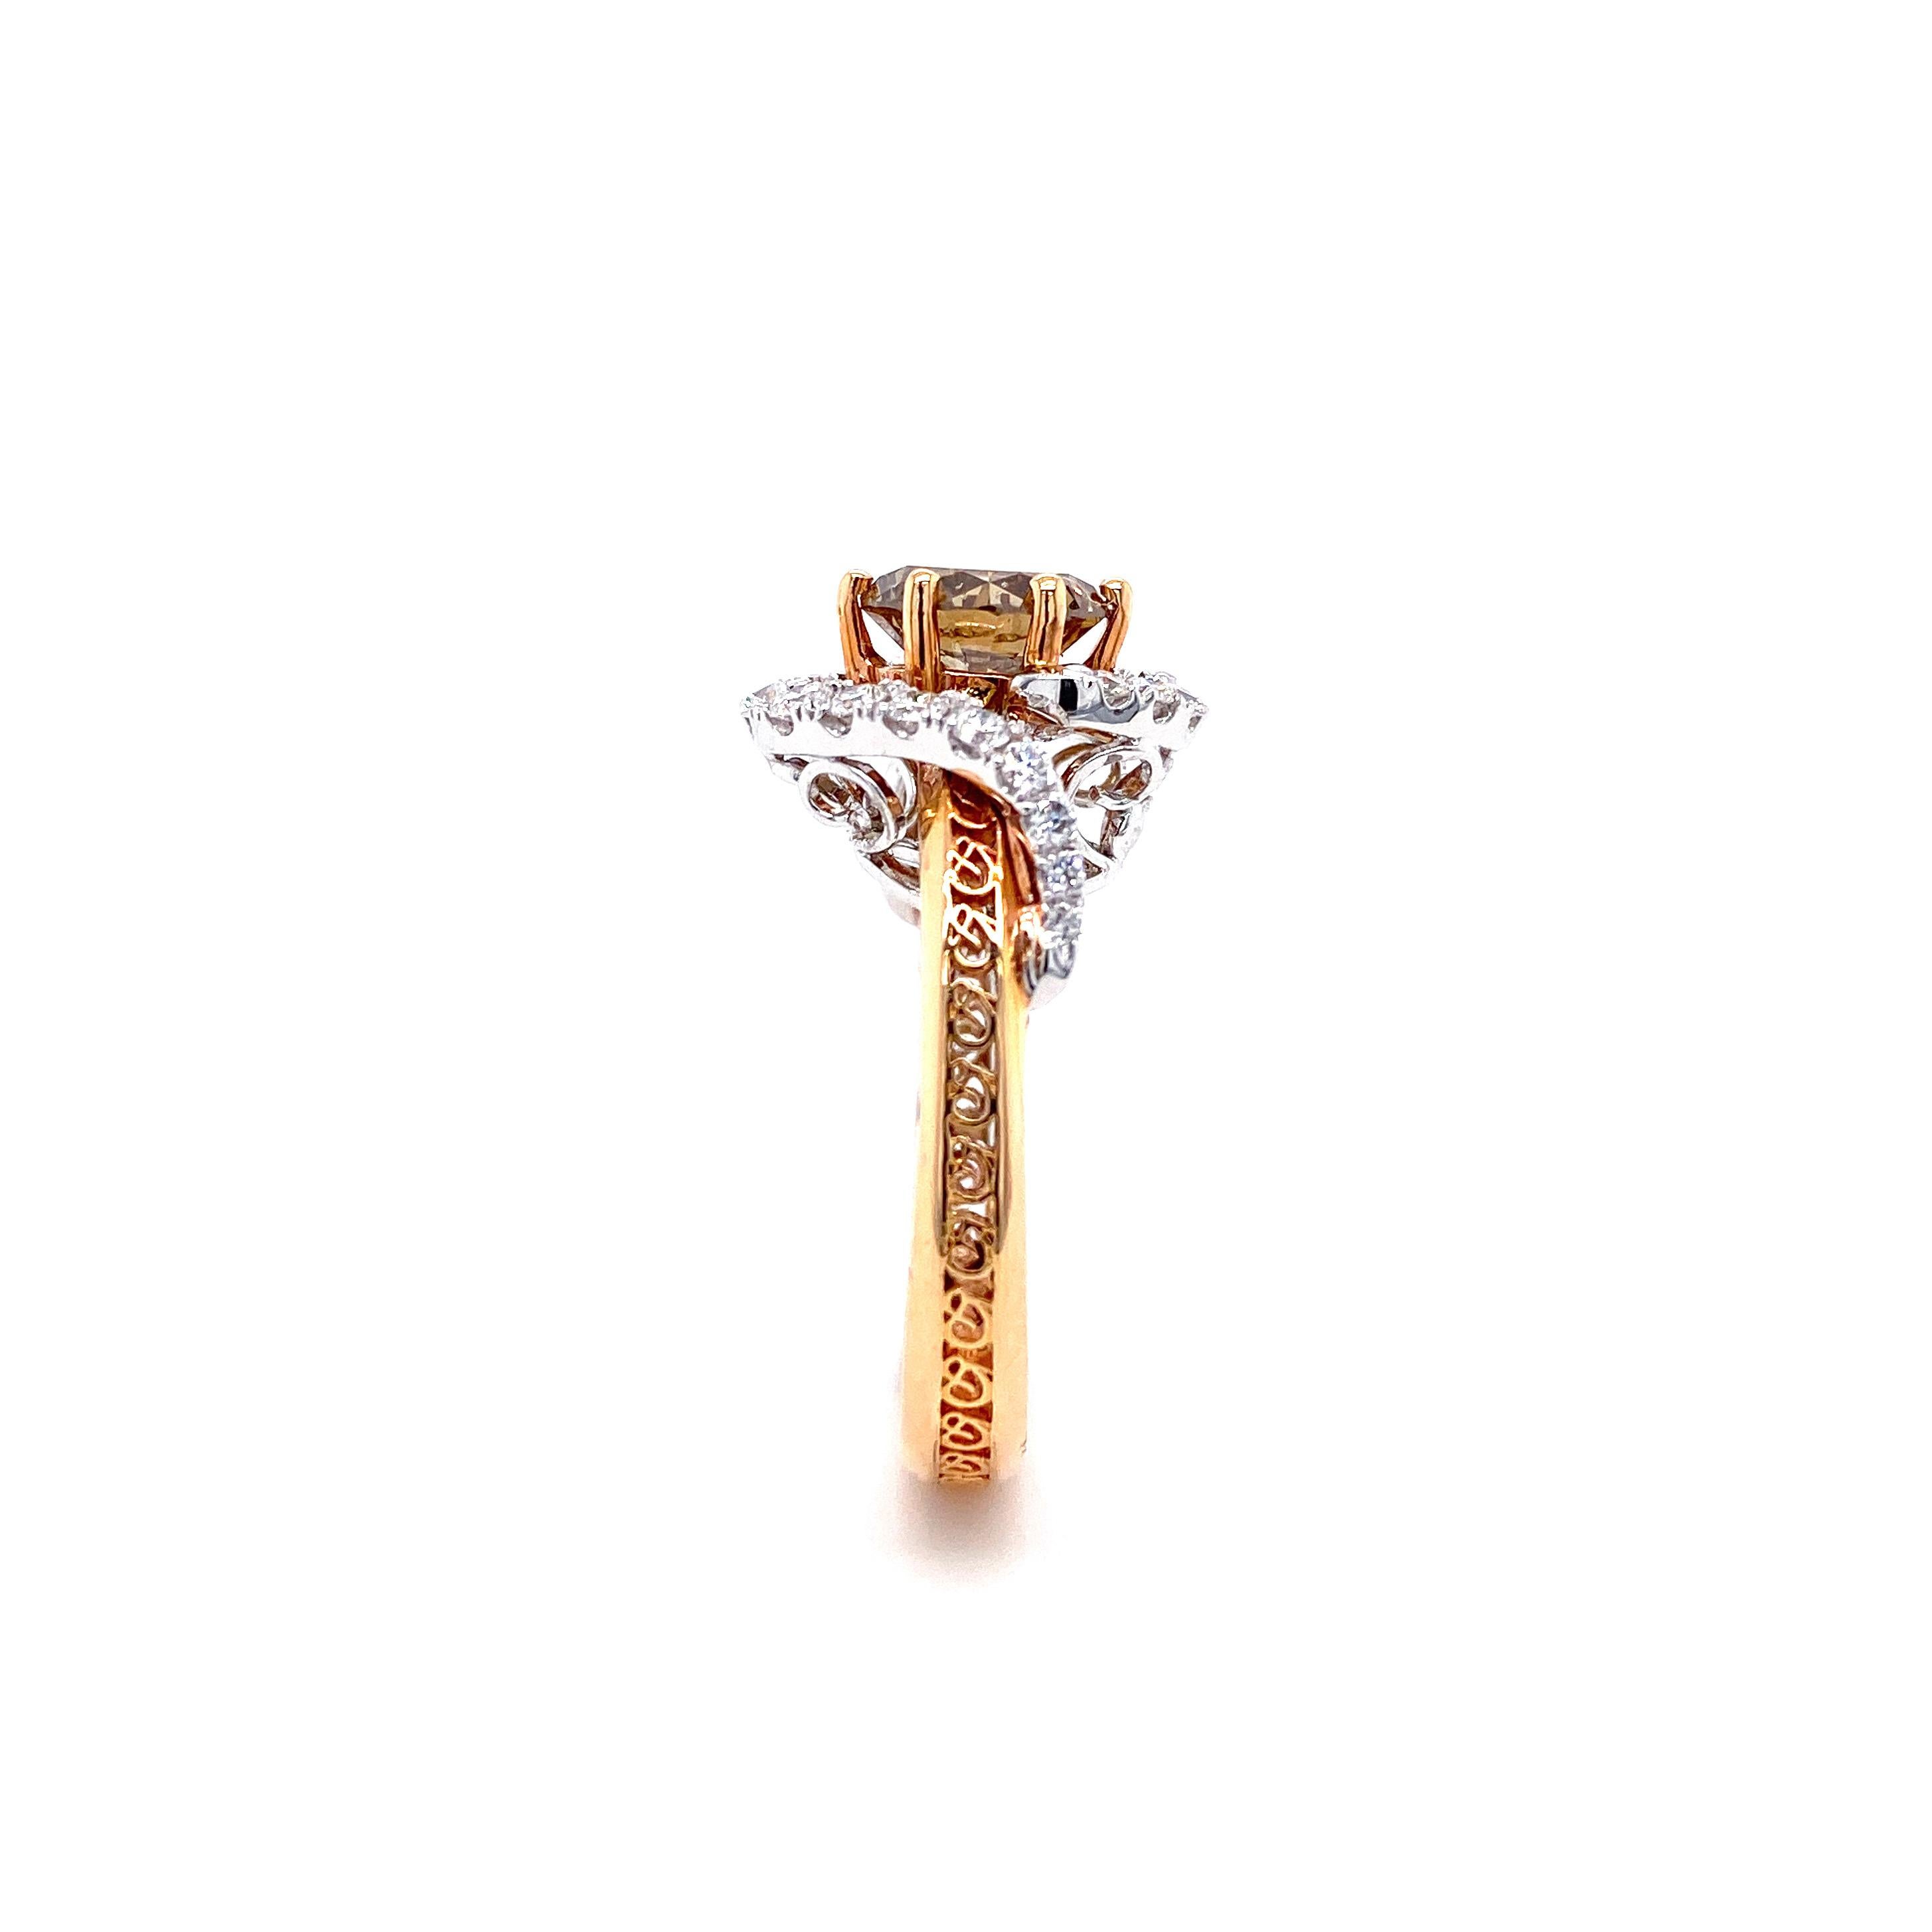 IGI Certified 3.57 Carat Brown Diamond Multi-Occasion Ring in 18 Karat Gold 3